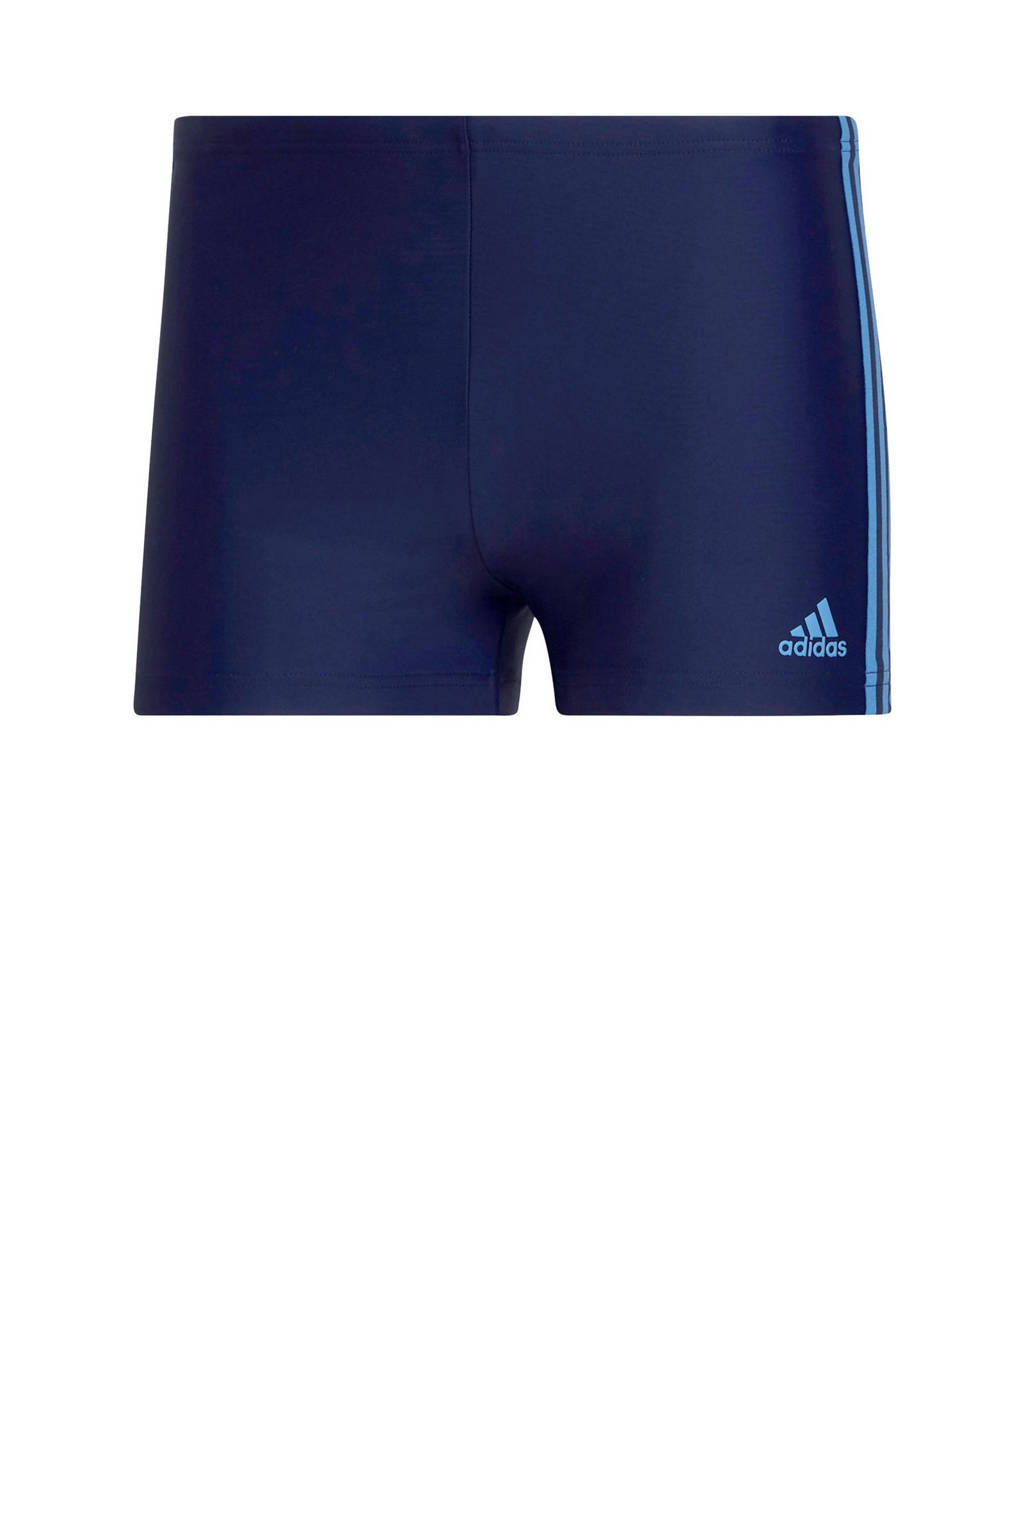 adidas Performance zwemboxer donkerblauw/blauw